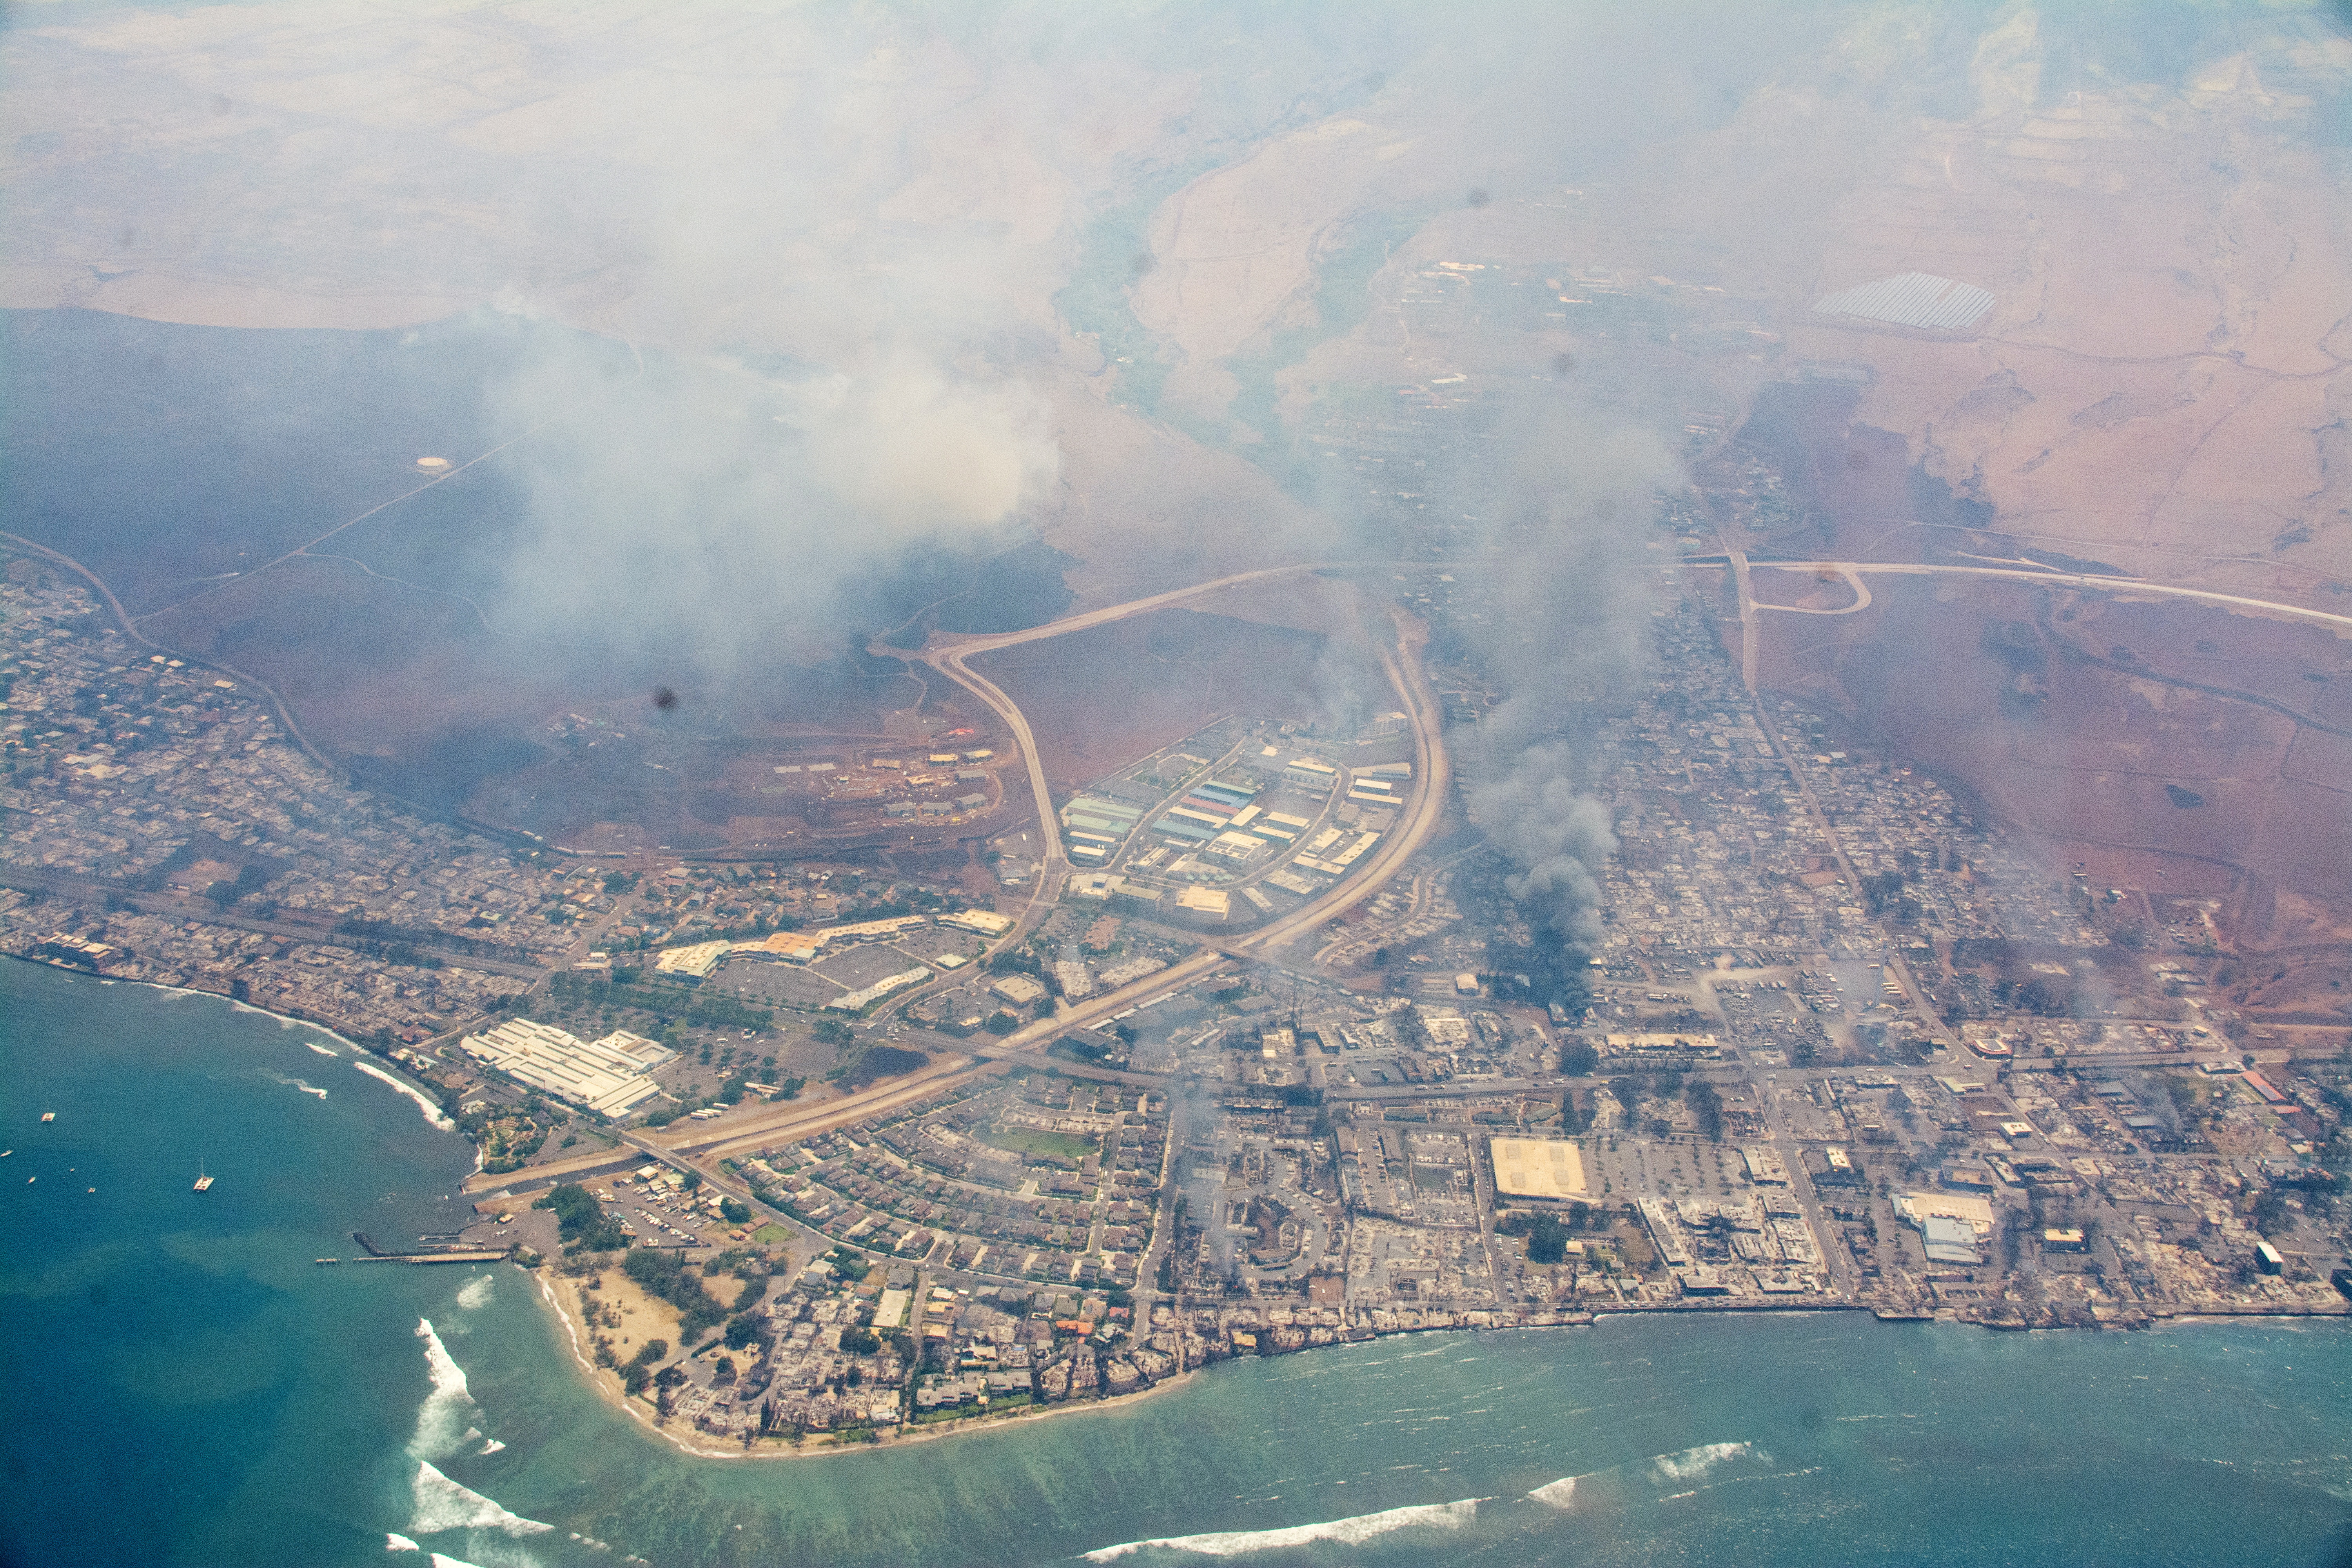 Maui wildfires kill at least 53 people